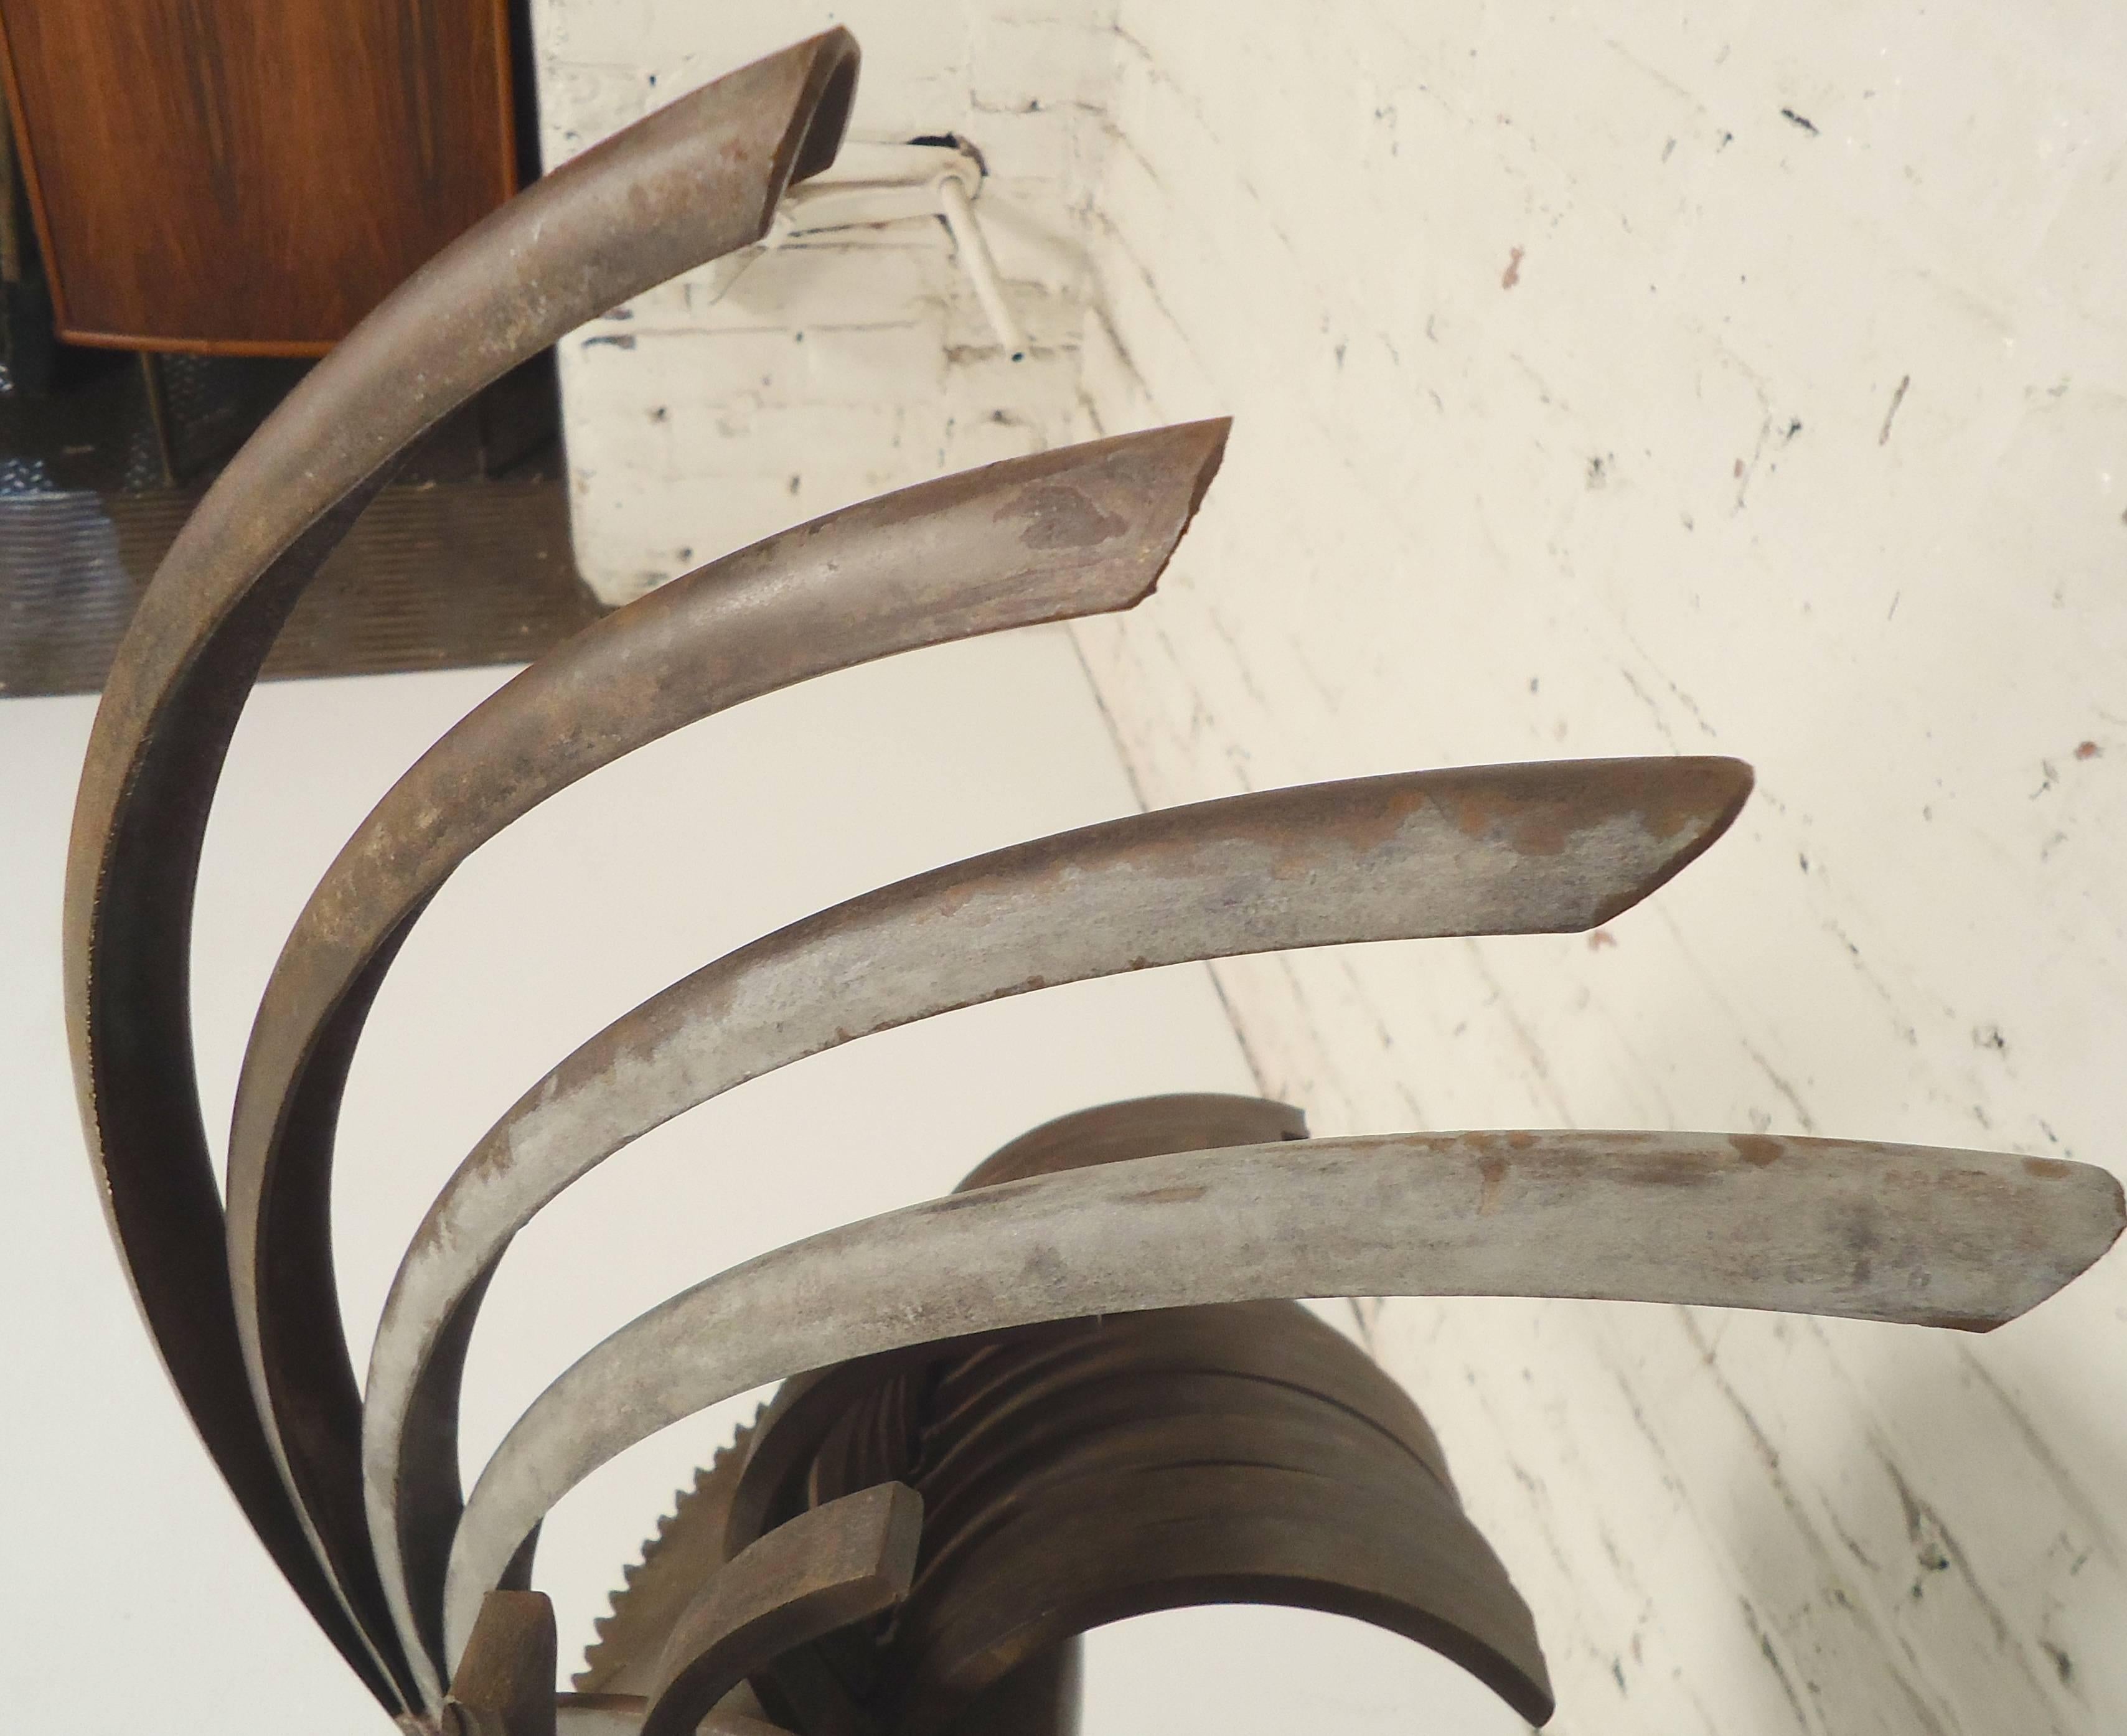 Dekorative geschweißte Metallskulptur, die einem Hahn ähnelt. Schweres oxidiertes Eisen, das zu einem abstrakten Kunstwerk zusammengeschweißt wurde.

(Bitte bestätigen Sie den Artikelstandort NY oder NJ mit dem Händler).
          